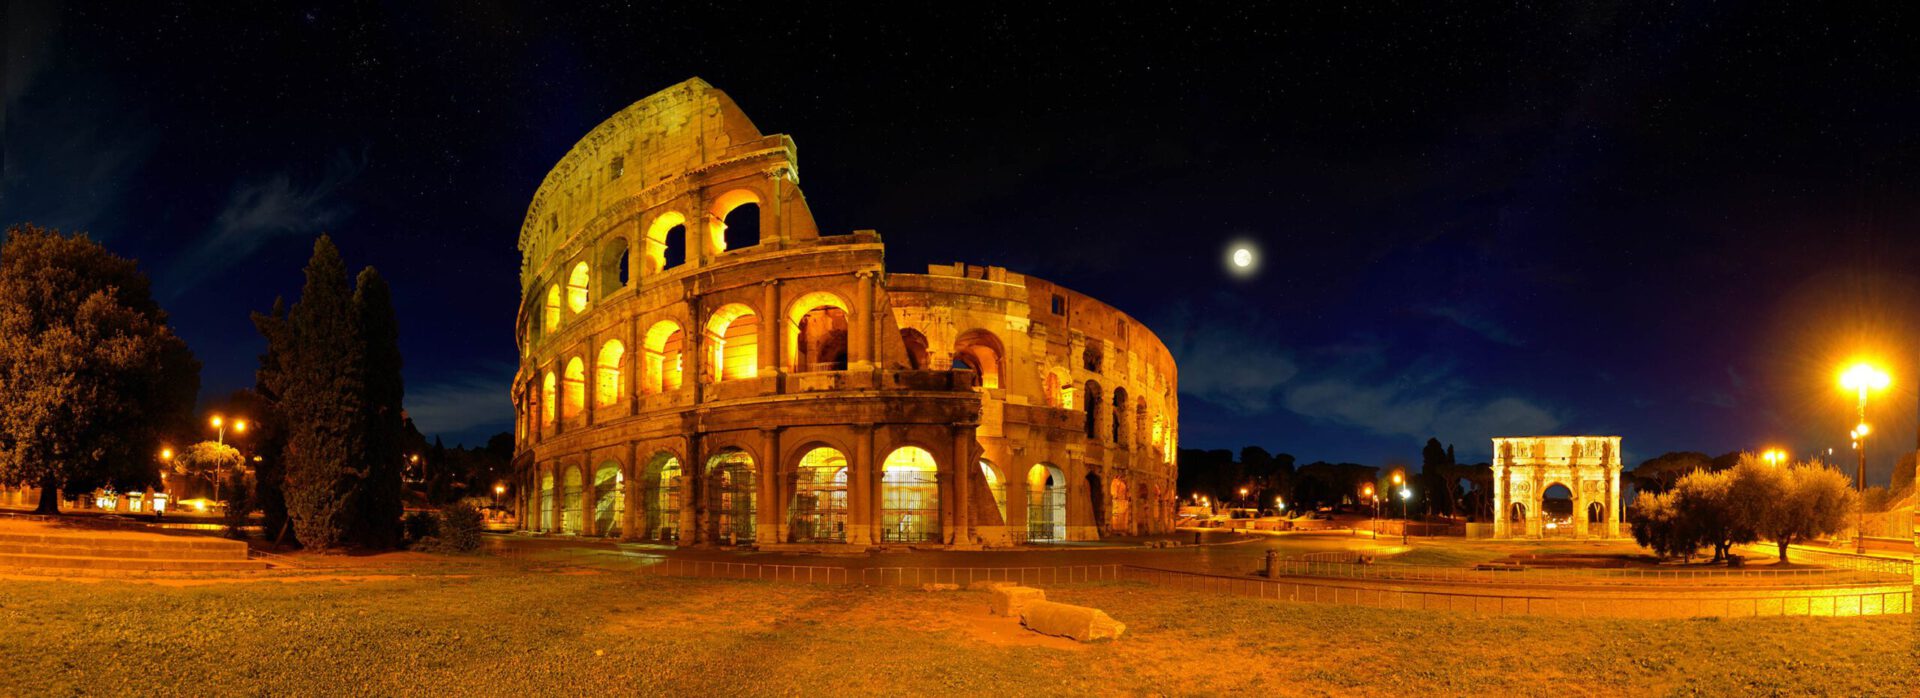 Uitsnede van een equirectangulair panorama van het Colosseum in Rome.